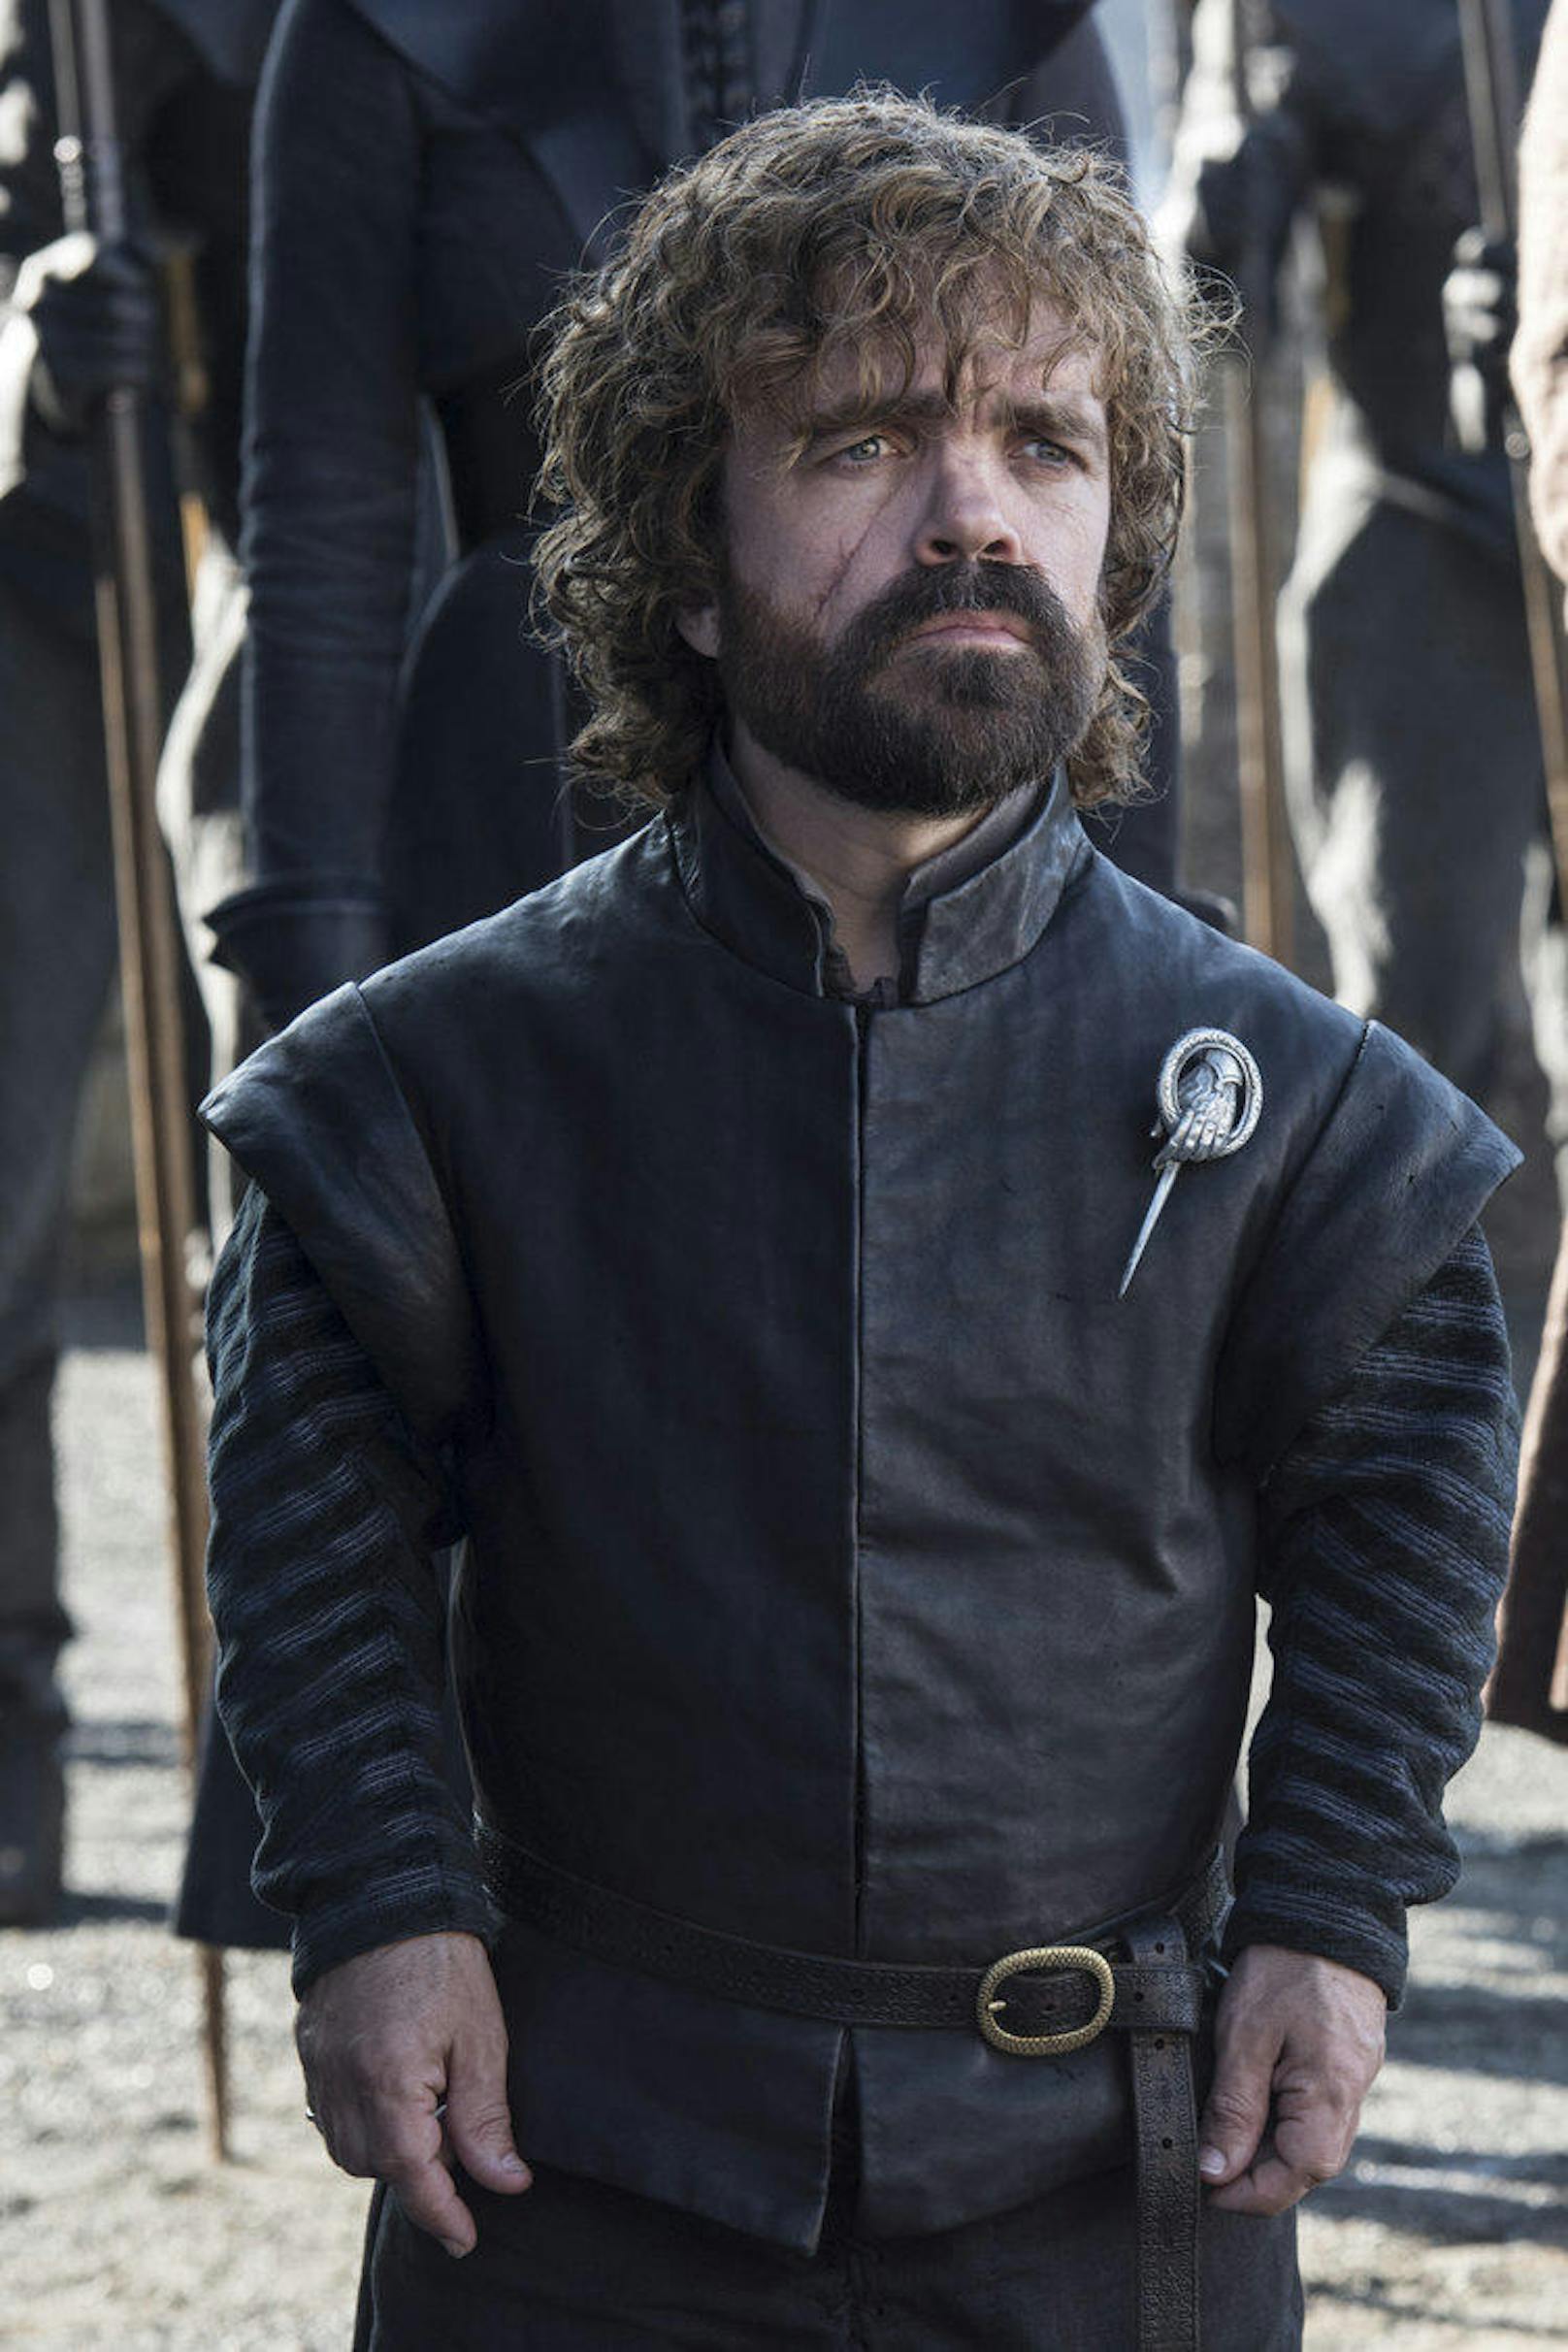 <strong>PLATZ 1:</strong> Im harten Kampf um den Thron für die "beliebteste Serienfigur aller Zeiten" hat sich <strong>Tyrion Lannister </strong>(Peter Dinklage) aus der Fantasy-Kultserie "Game of Thrones" (2011 - 2019) durchgesetzt. Während sich die Geister über das Serienende scheiden, ist man sich bei Tyrion sicher und katapultiert ihn auf den ersten Platz.